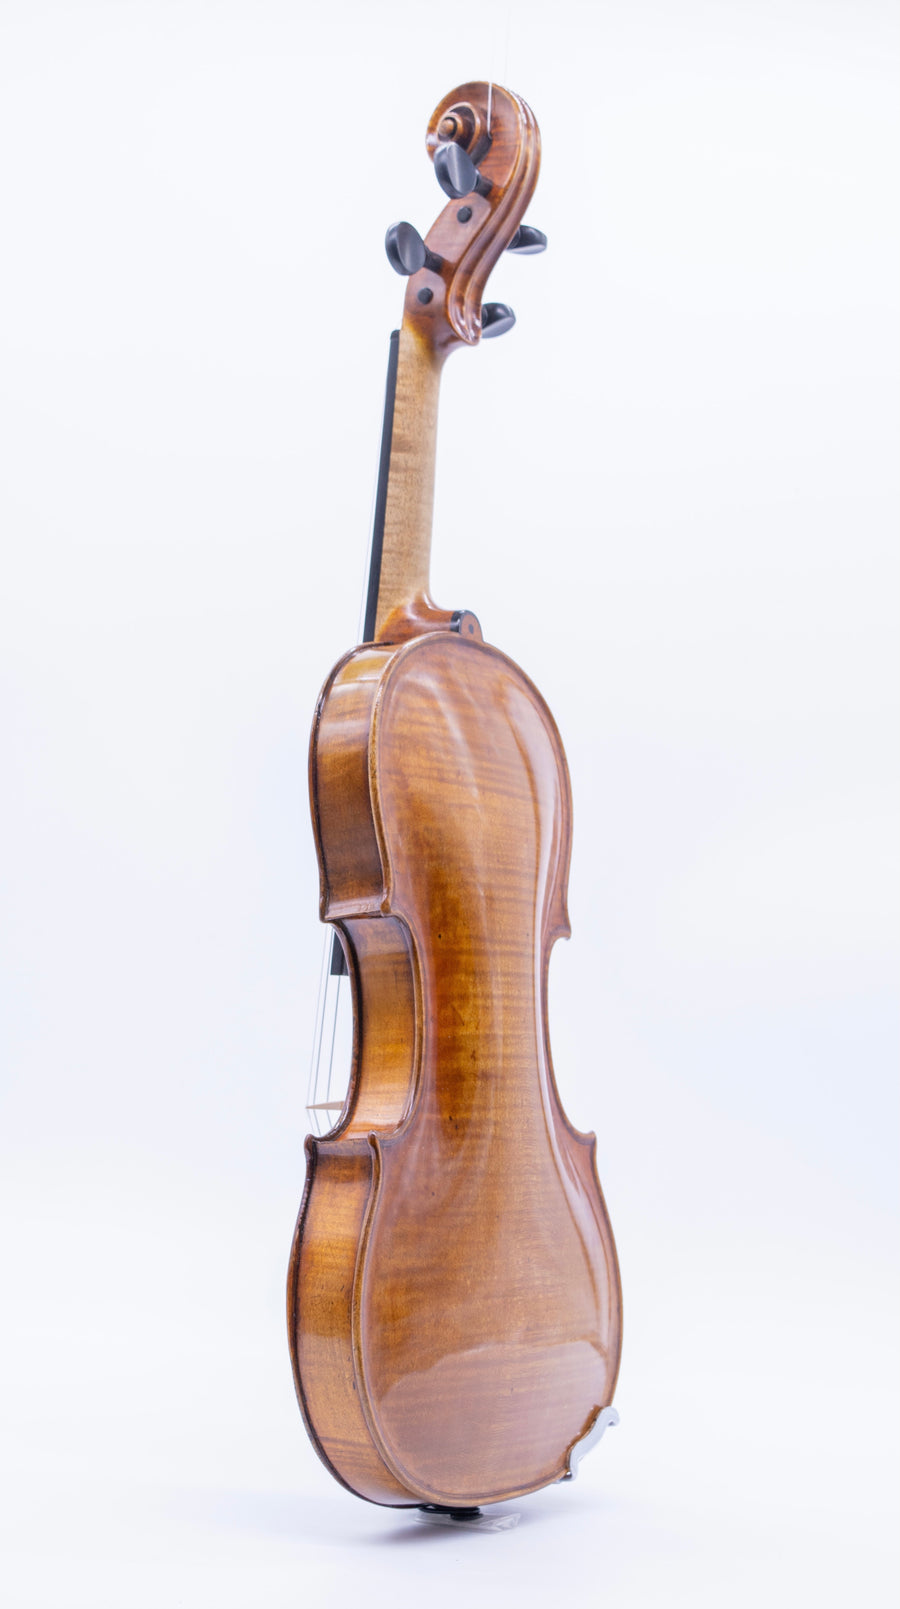 Vieux Paris Violin By Louis Guersan, Circa 1755-1760.